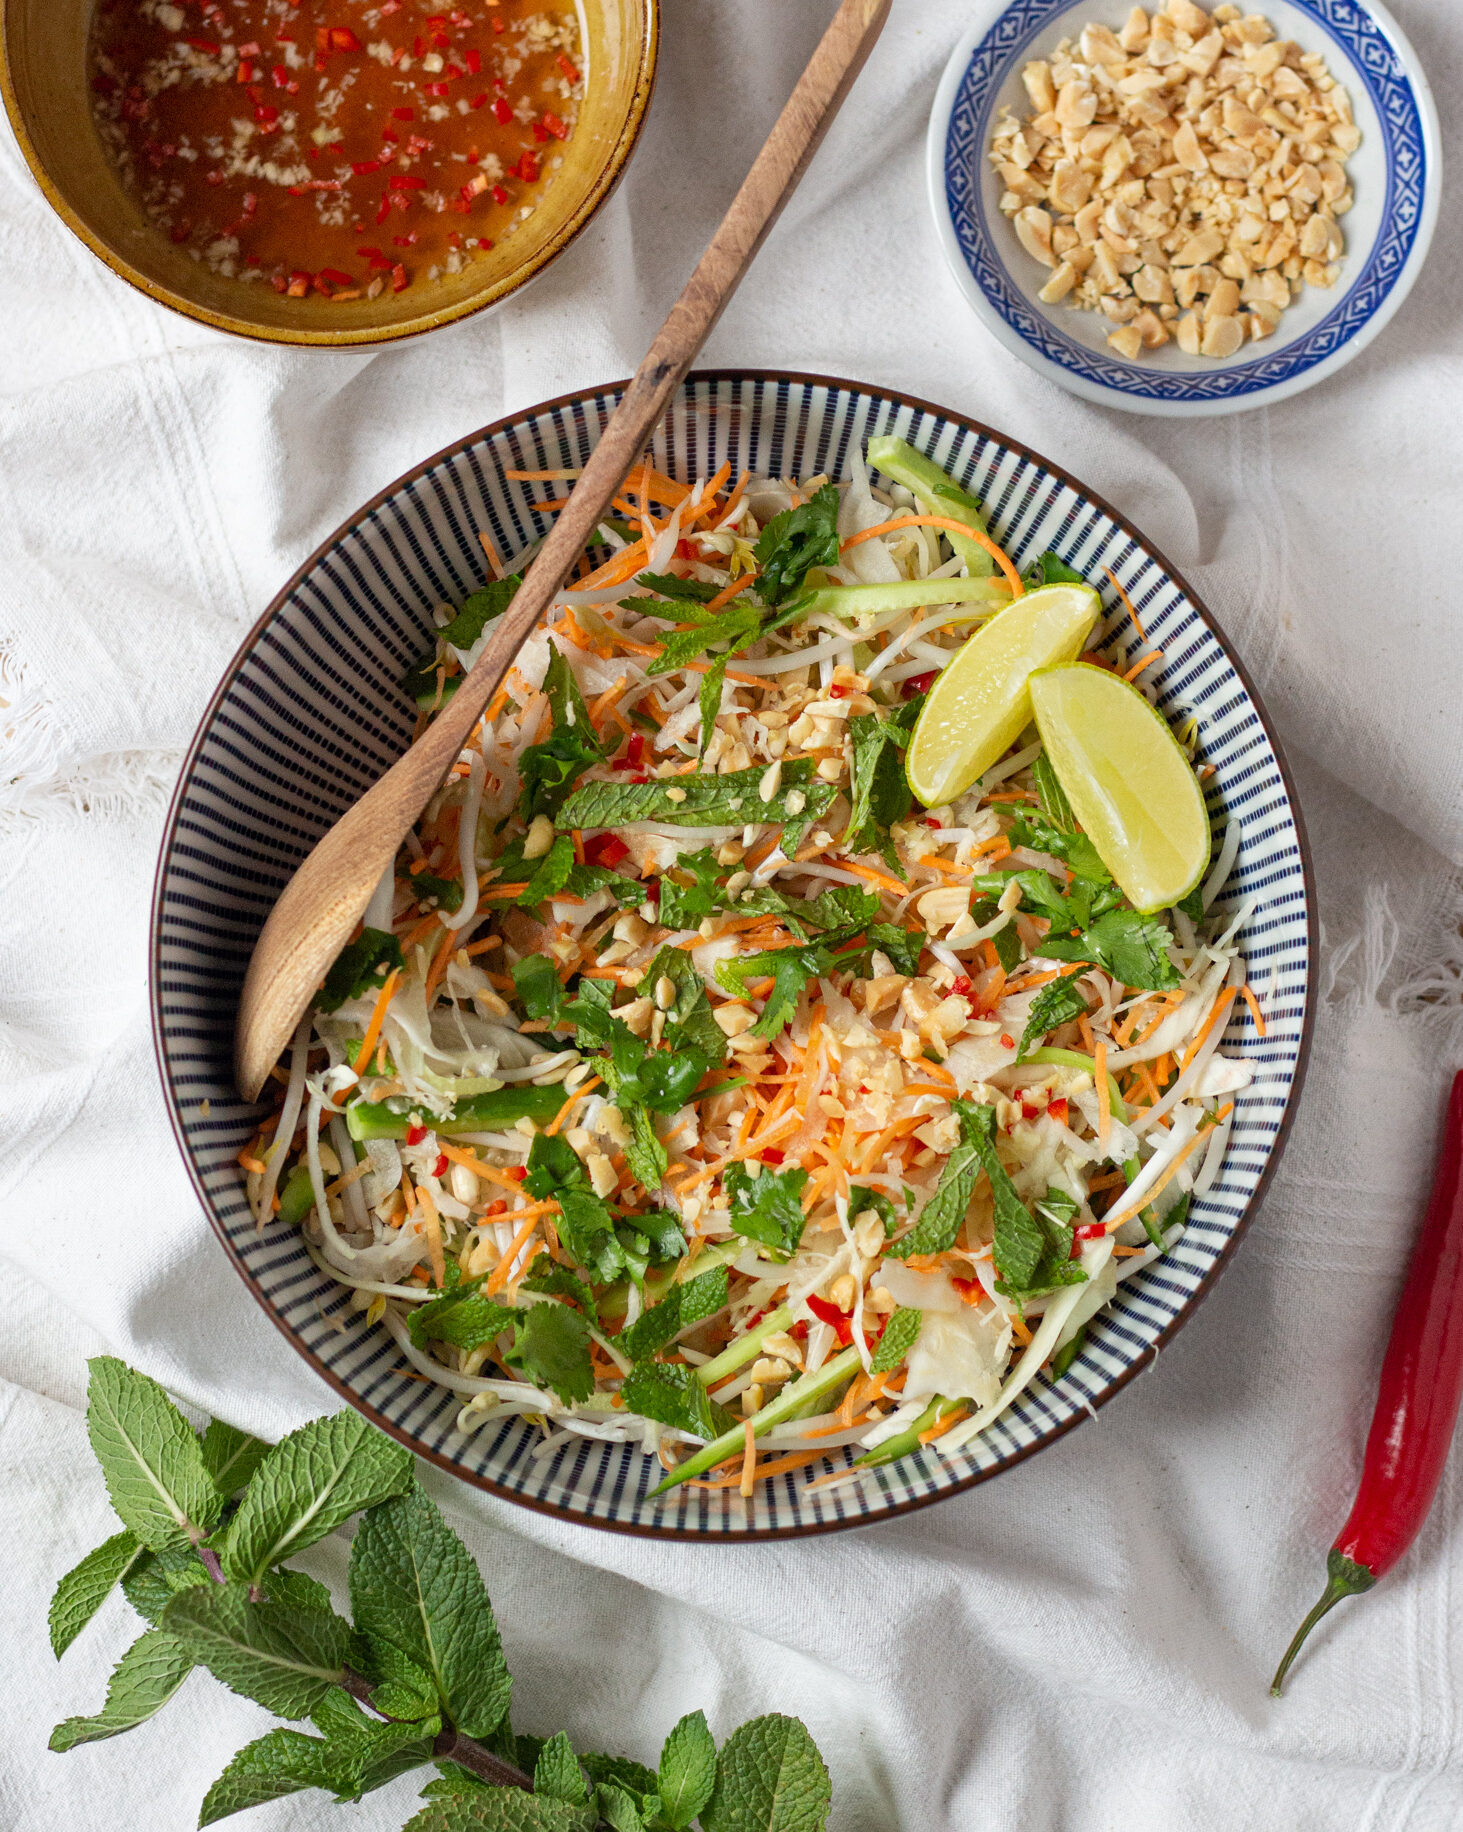 Ви можете їсти в’єтнамський овочевий салат сам по собі, як гарнір до азіатських страв, стейків або навіть класти йогоу сендвічі або бургери.